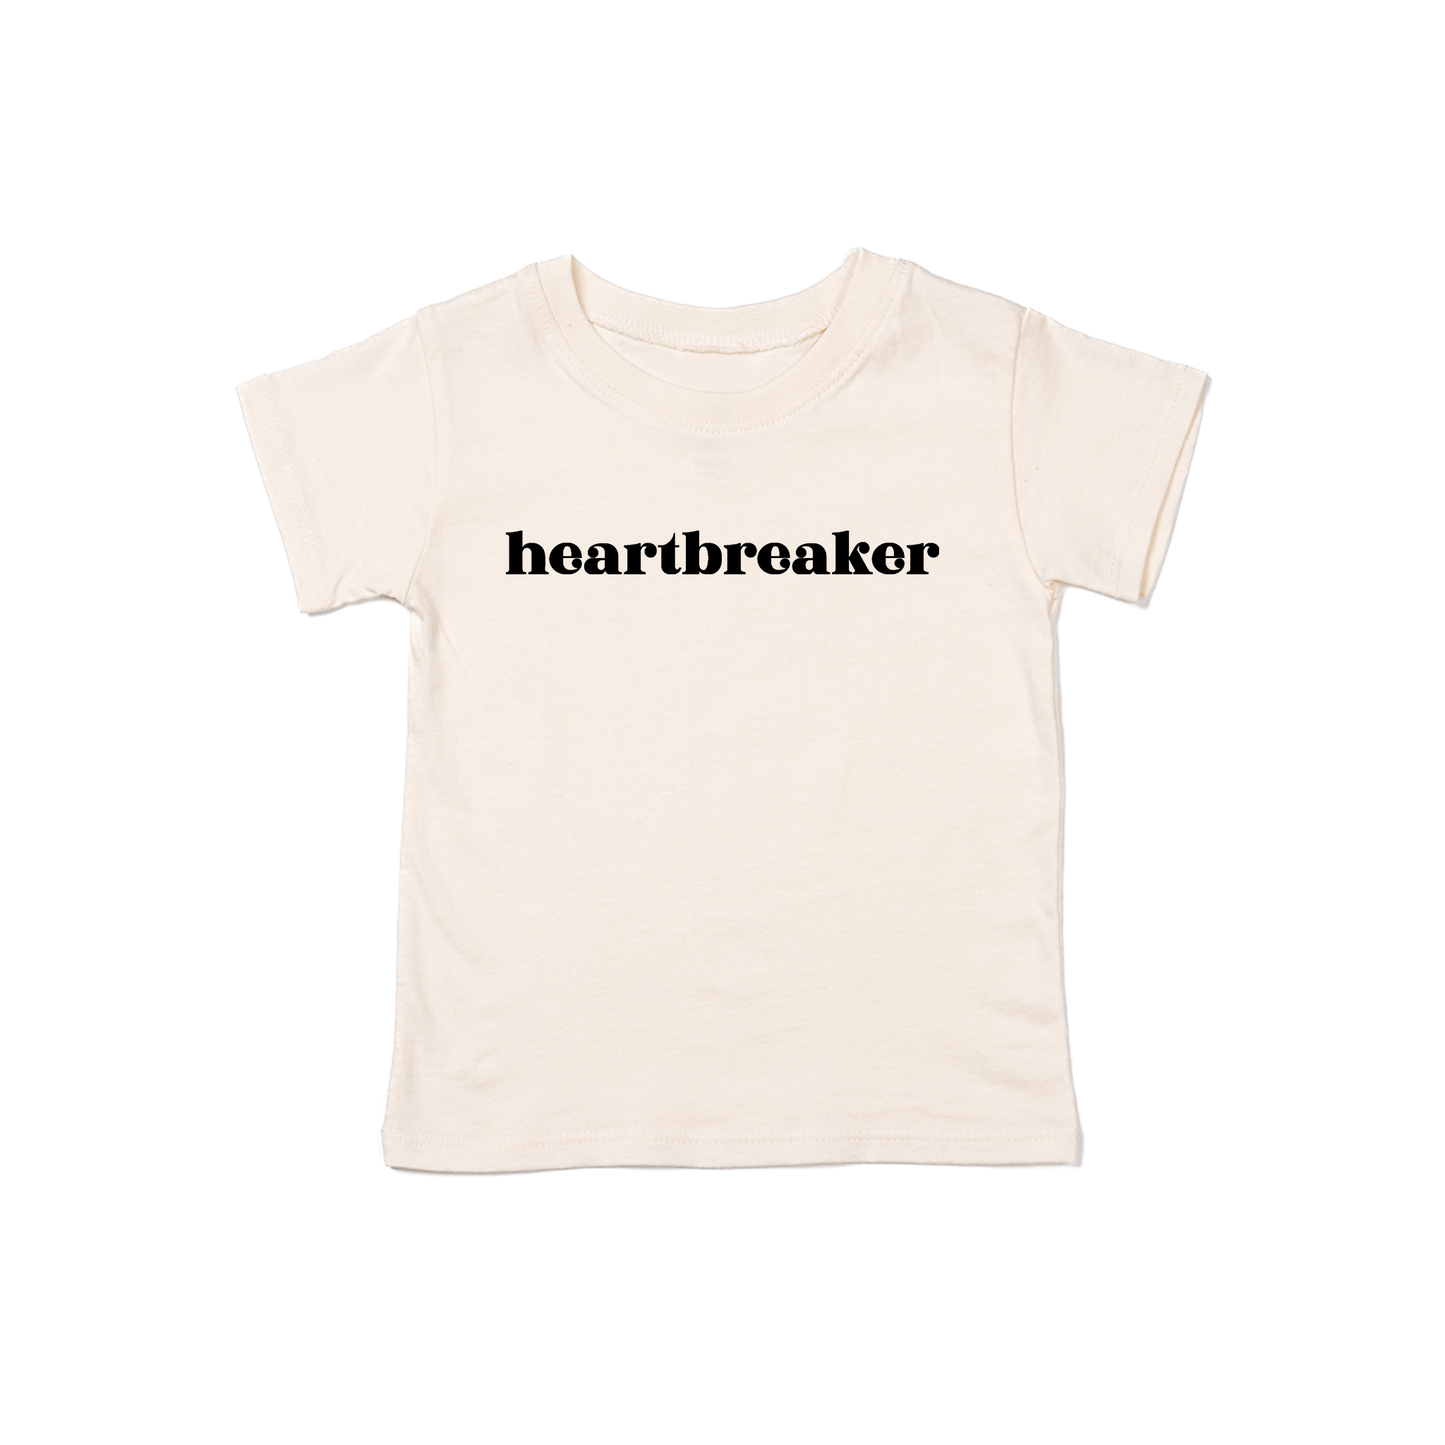 Heartbreaker (Black) - Kids Tee (Natural)